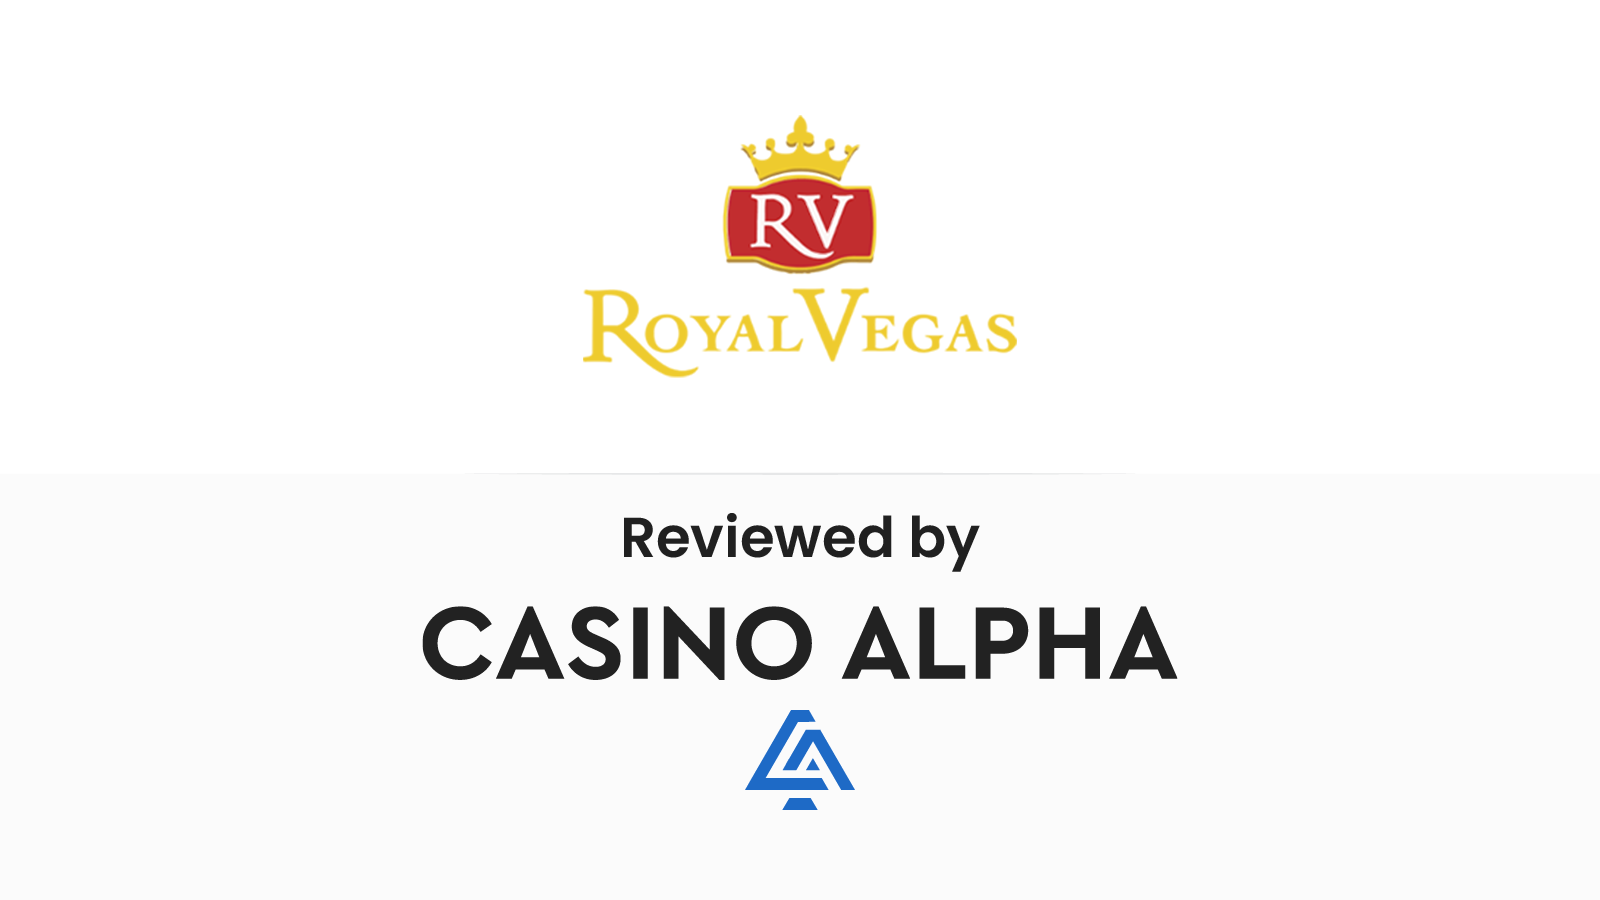 Royal Vegas Casino Review & Bonus codes